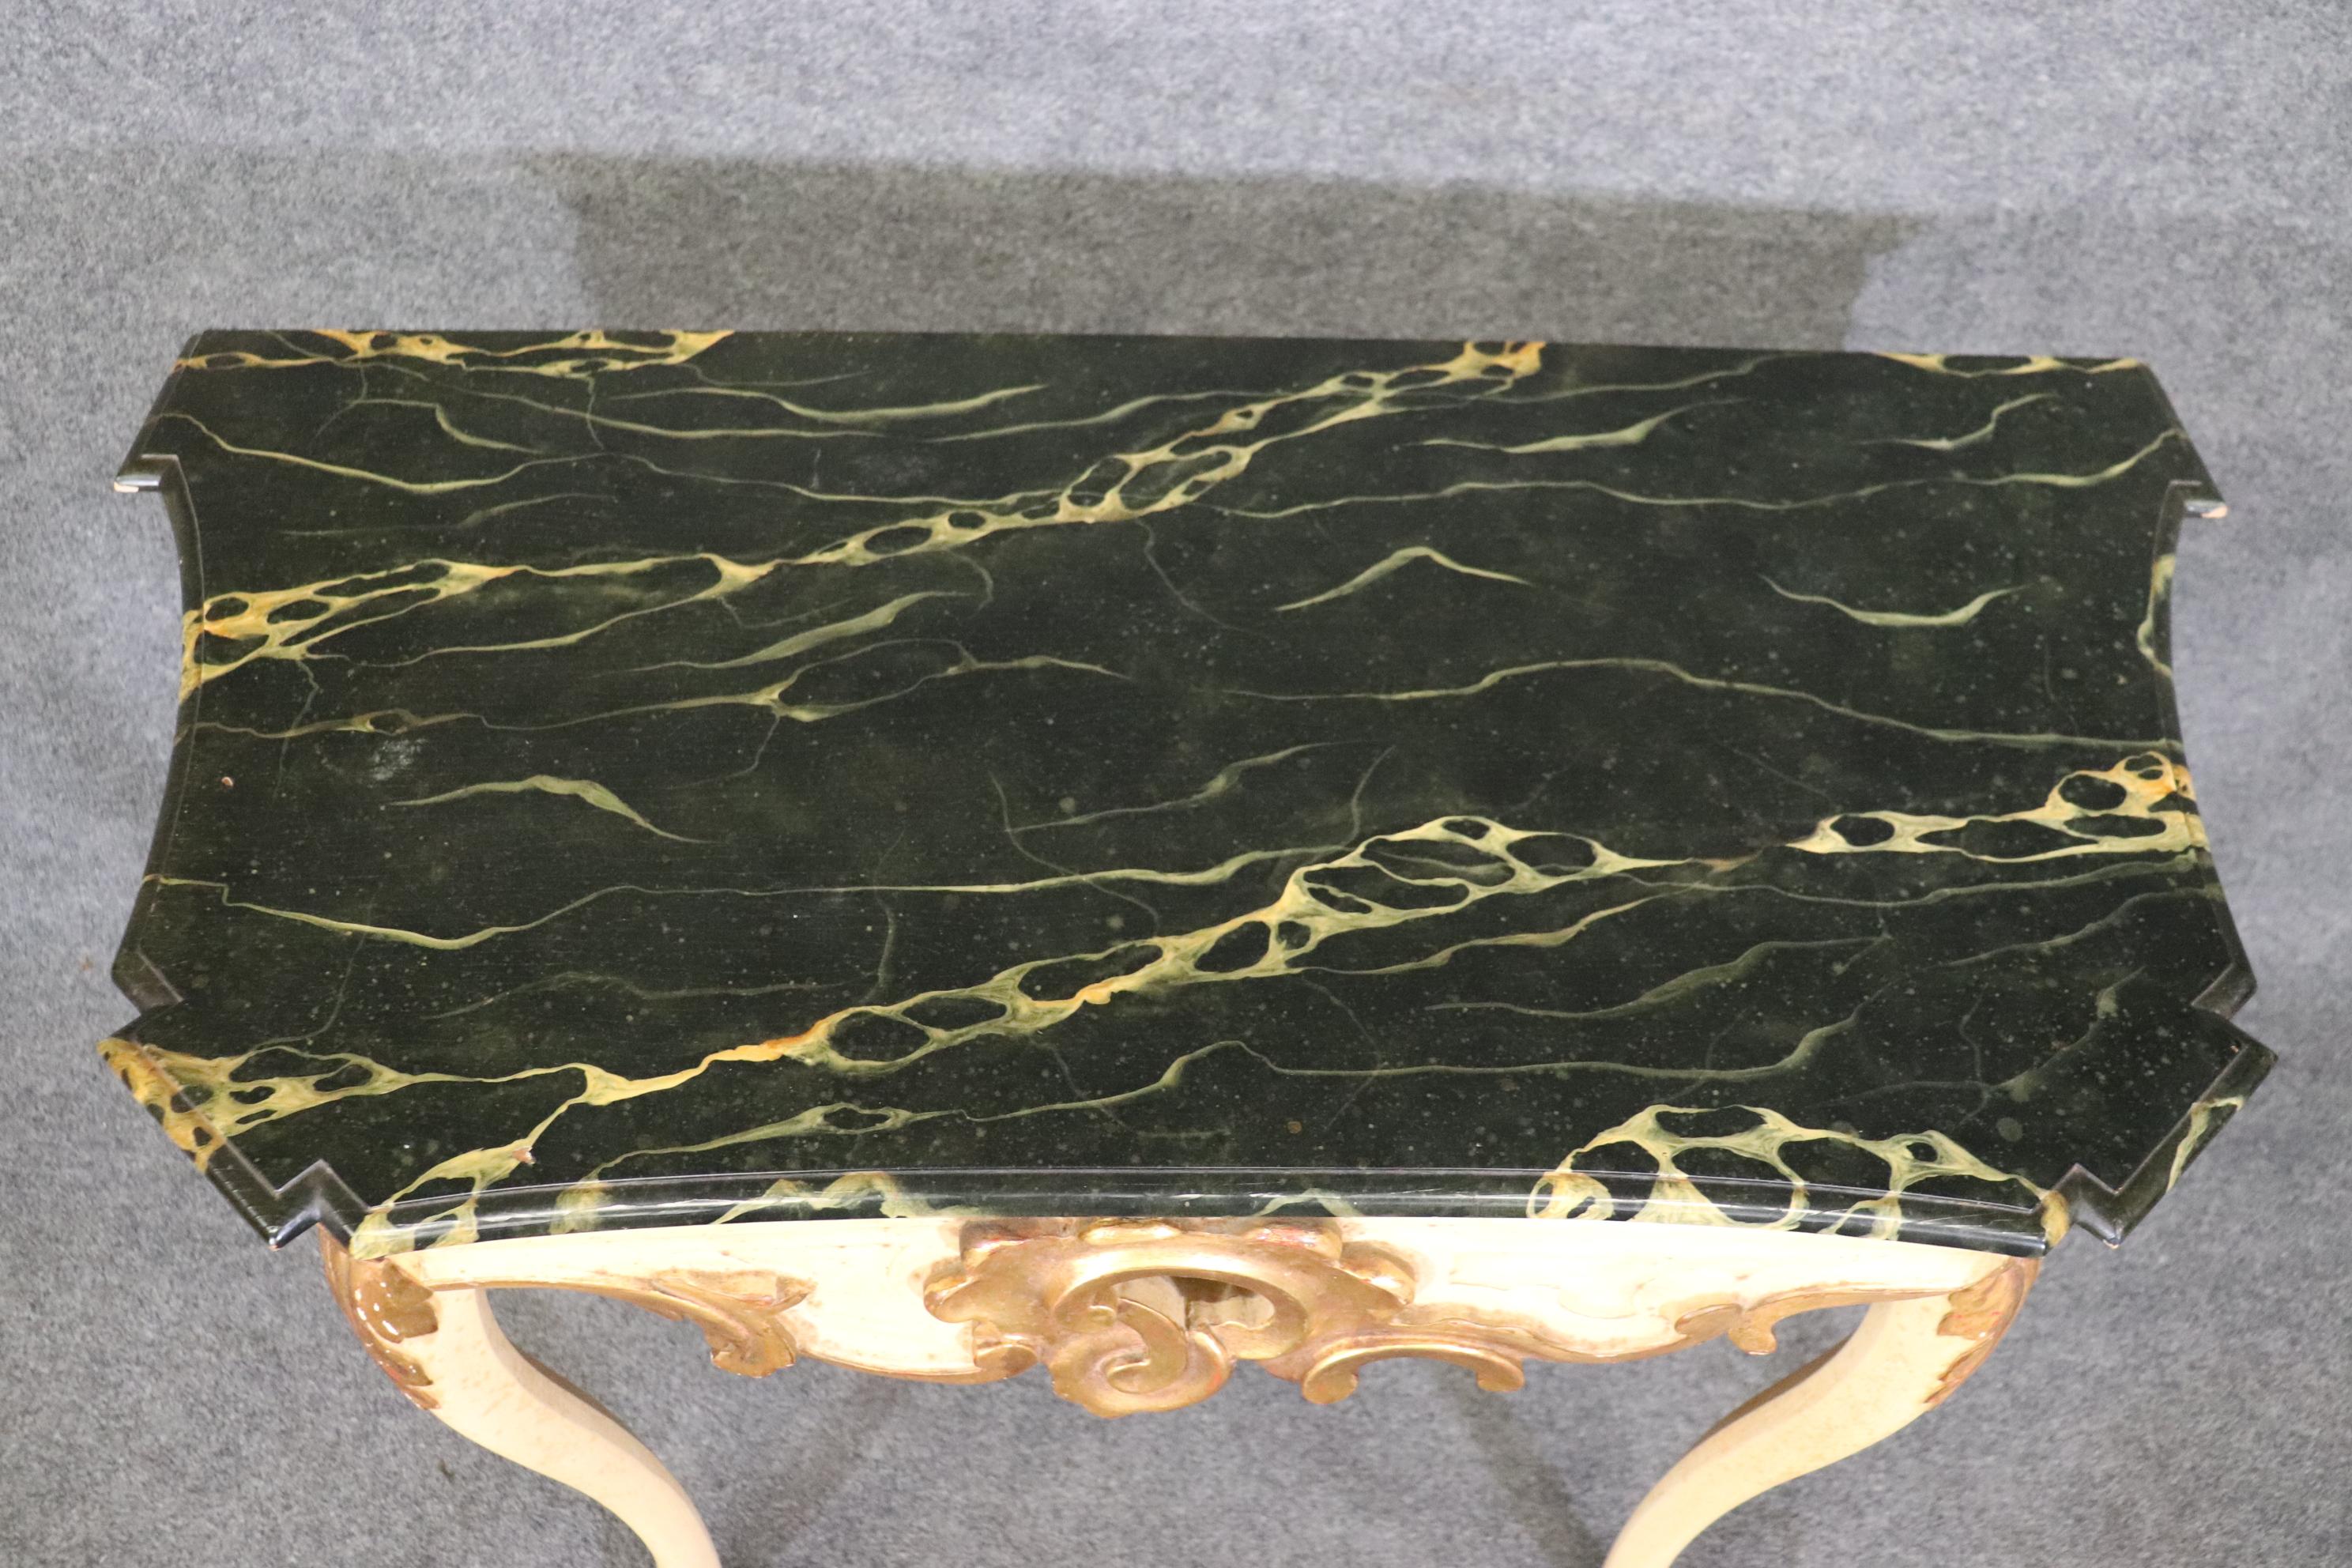 Dies ist eine schöne faux Marmor Farbe dekoriert Baker Furniture Konsole Tisch im Stil Louis XV. Der Tisch ist über 50 Jahre alt und weist daher Alters- und Gebrauchsspuren auf. Der Tisch ist 44,25 breit x 31,25 hoch x 21,75 tief. Der Tisch stammt